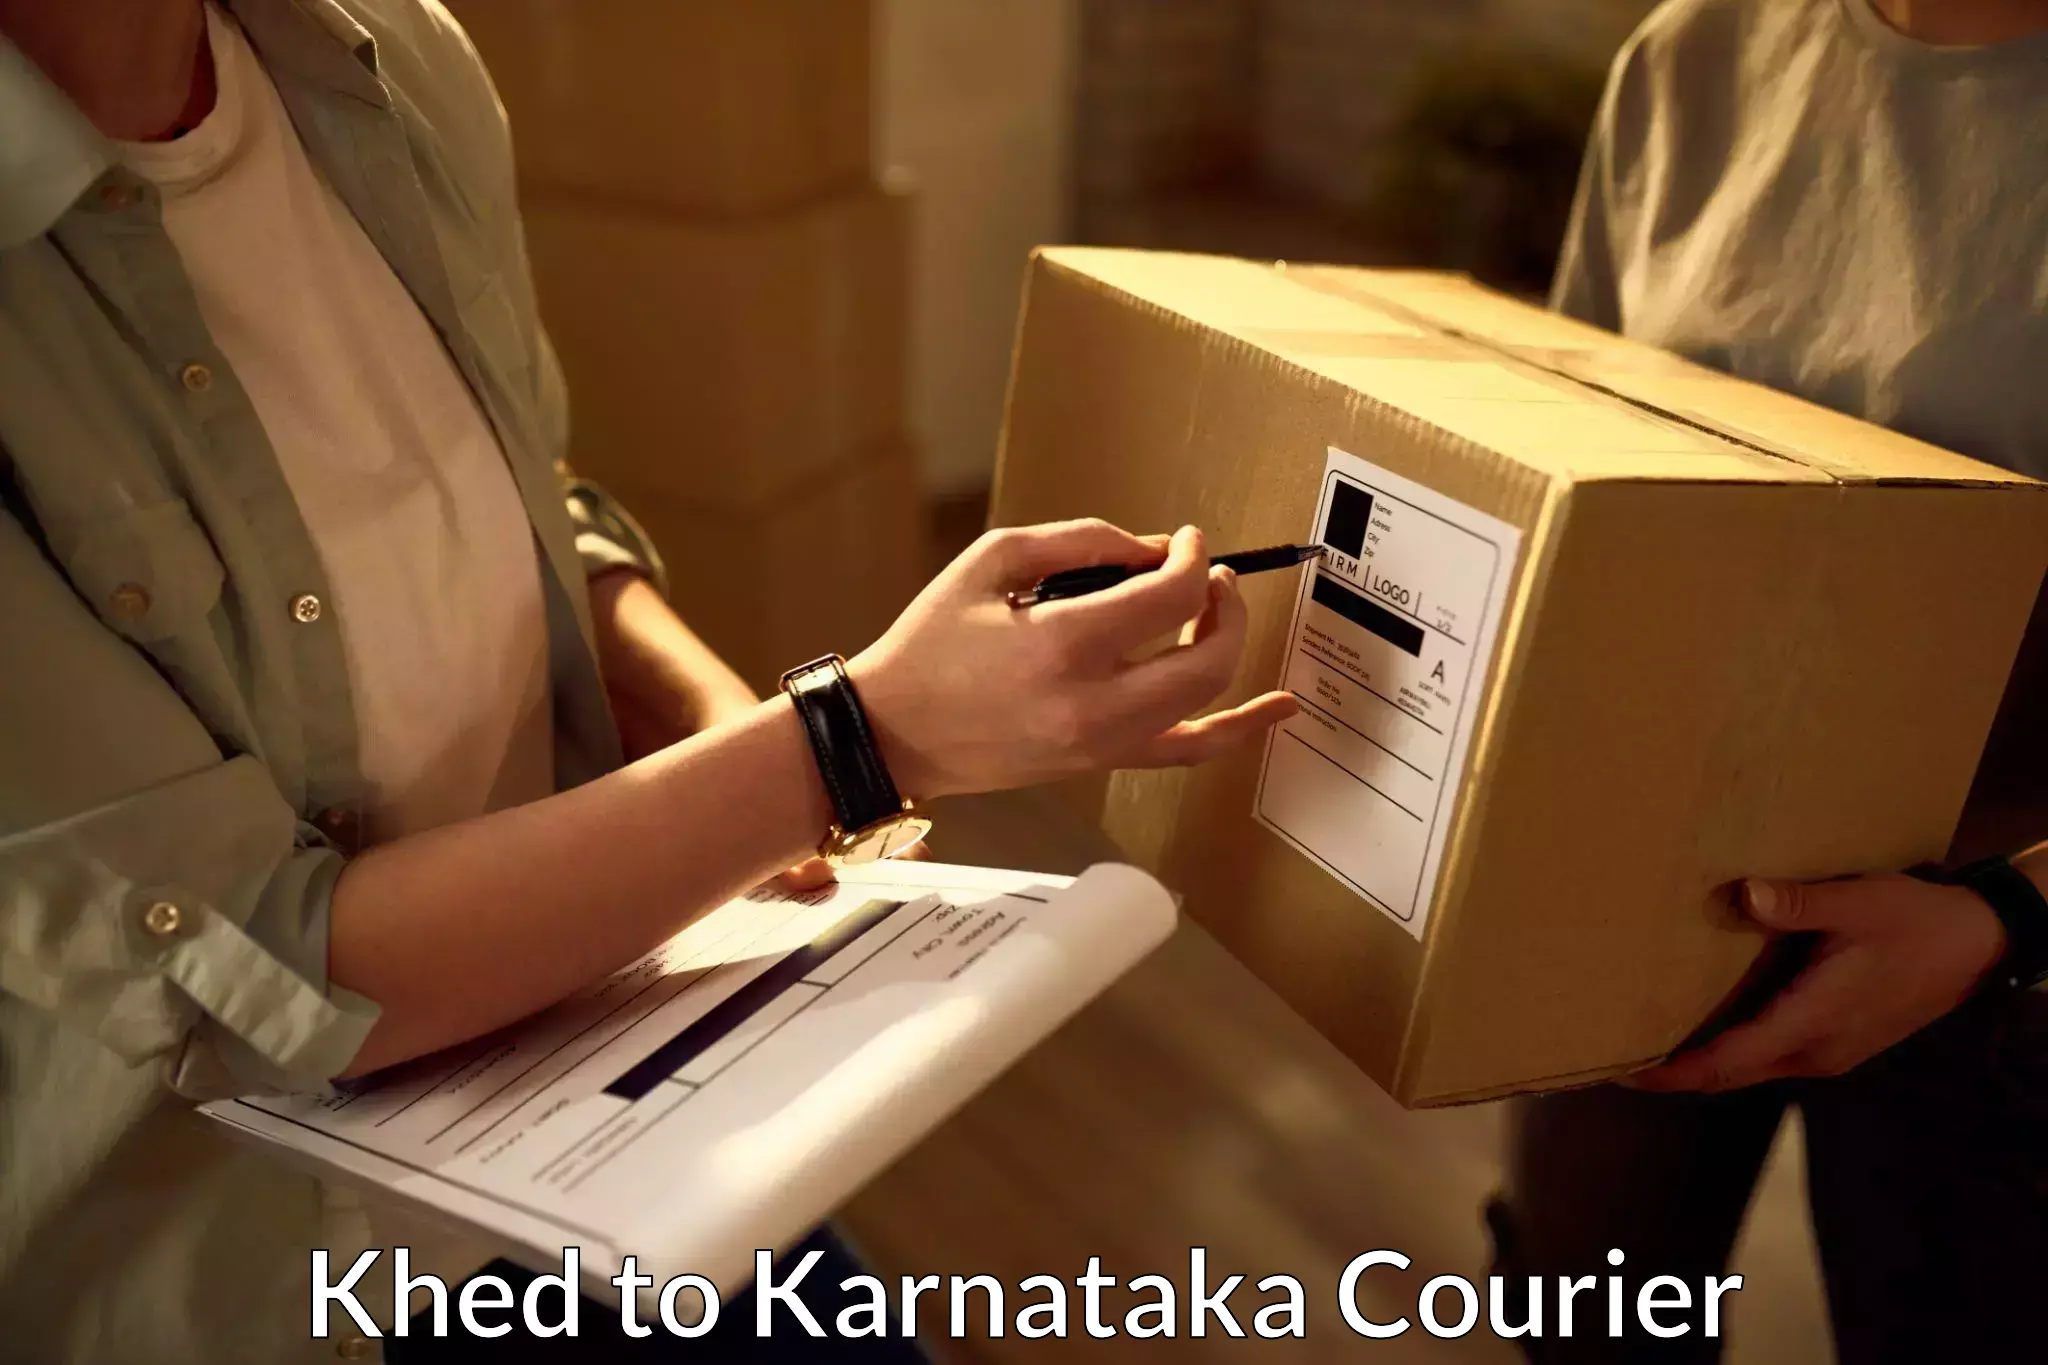 Long distance courier Khed to Kanjarakatte